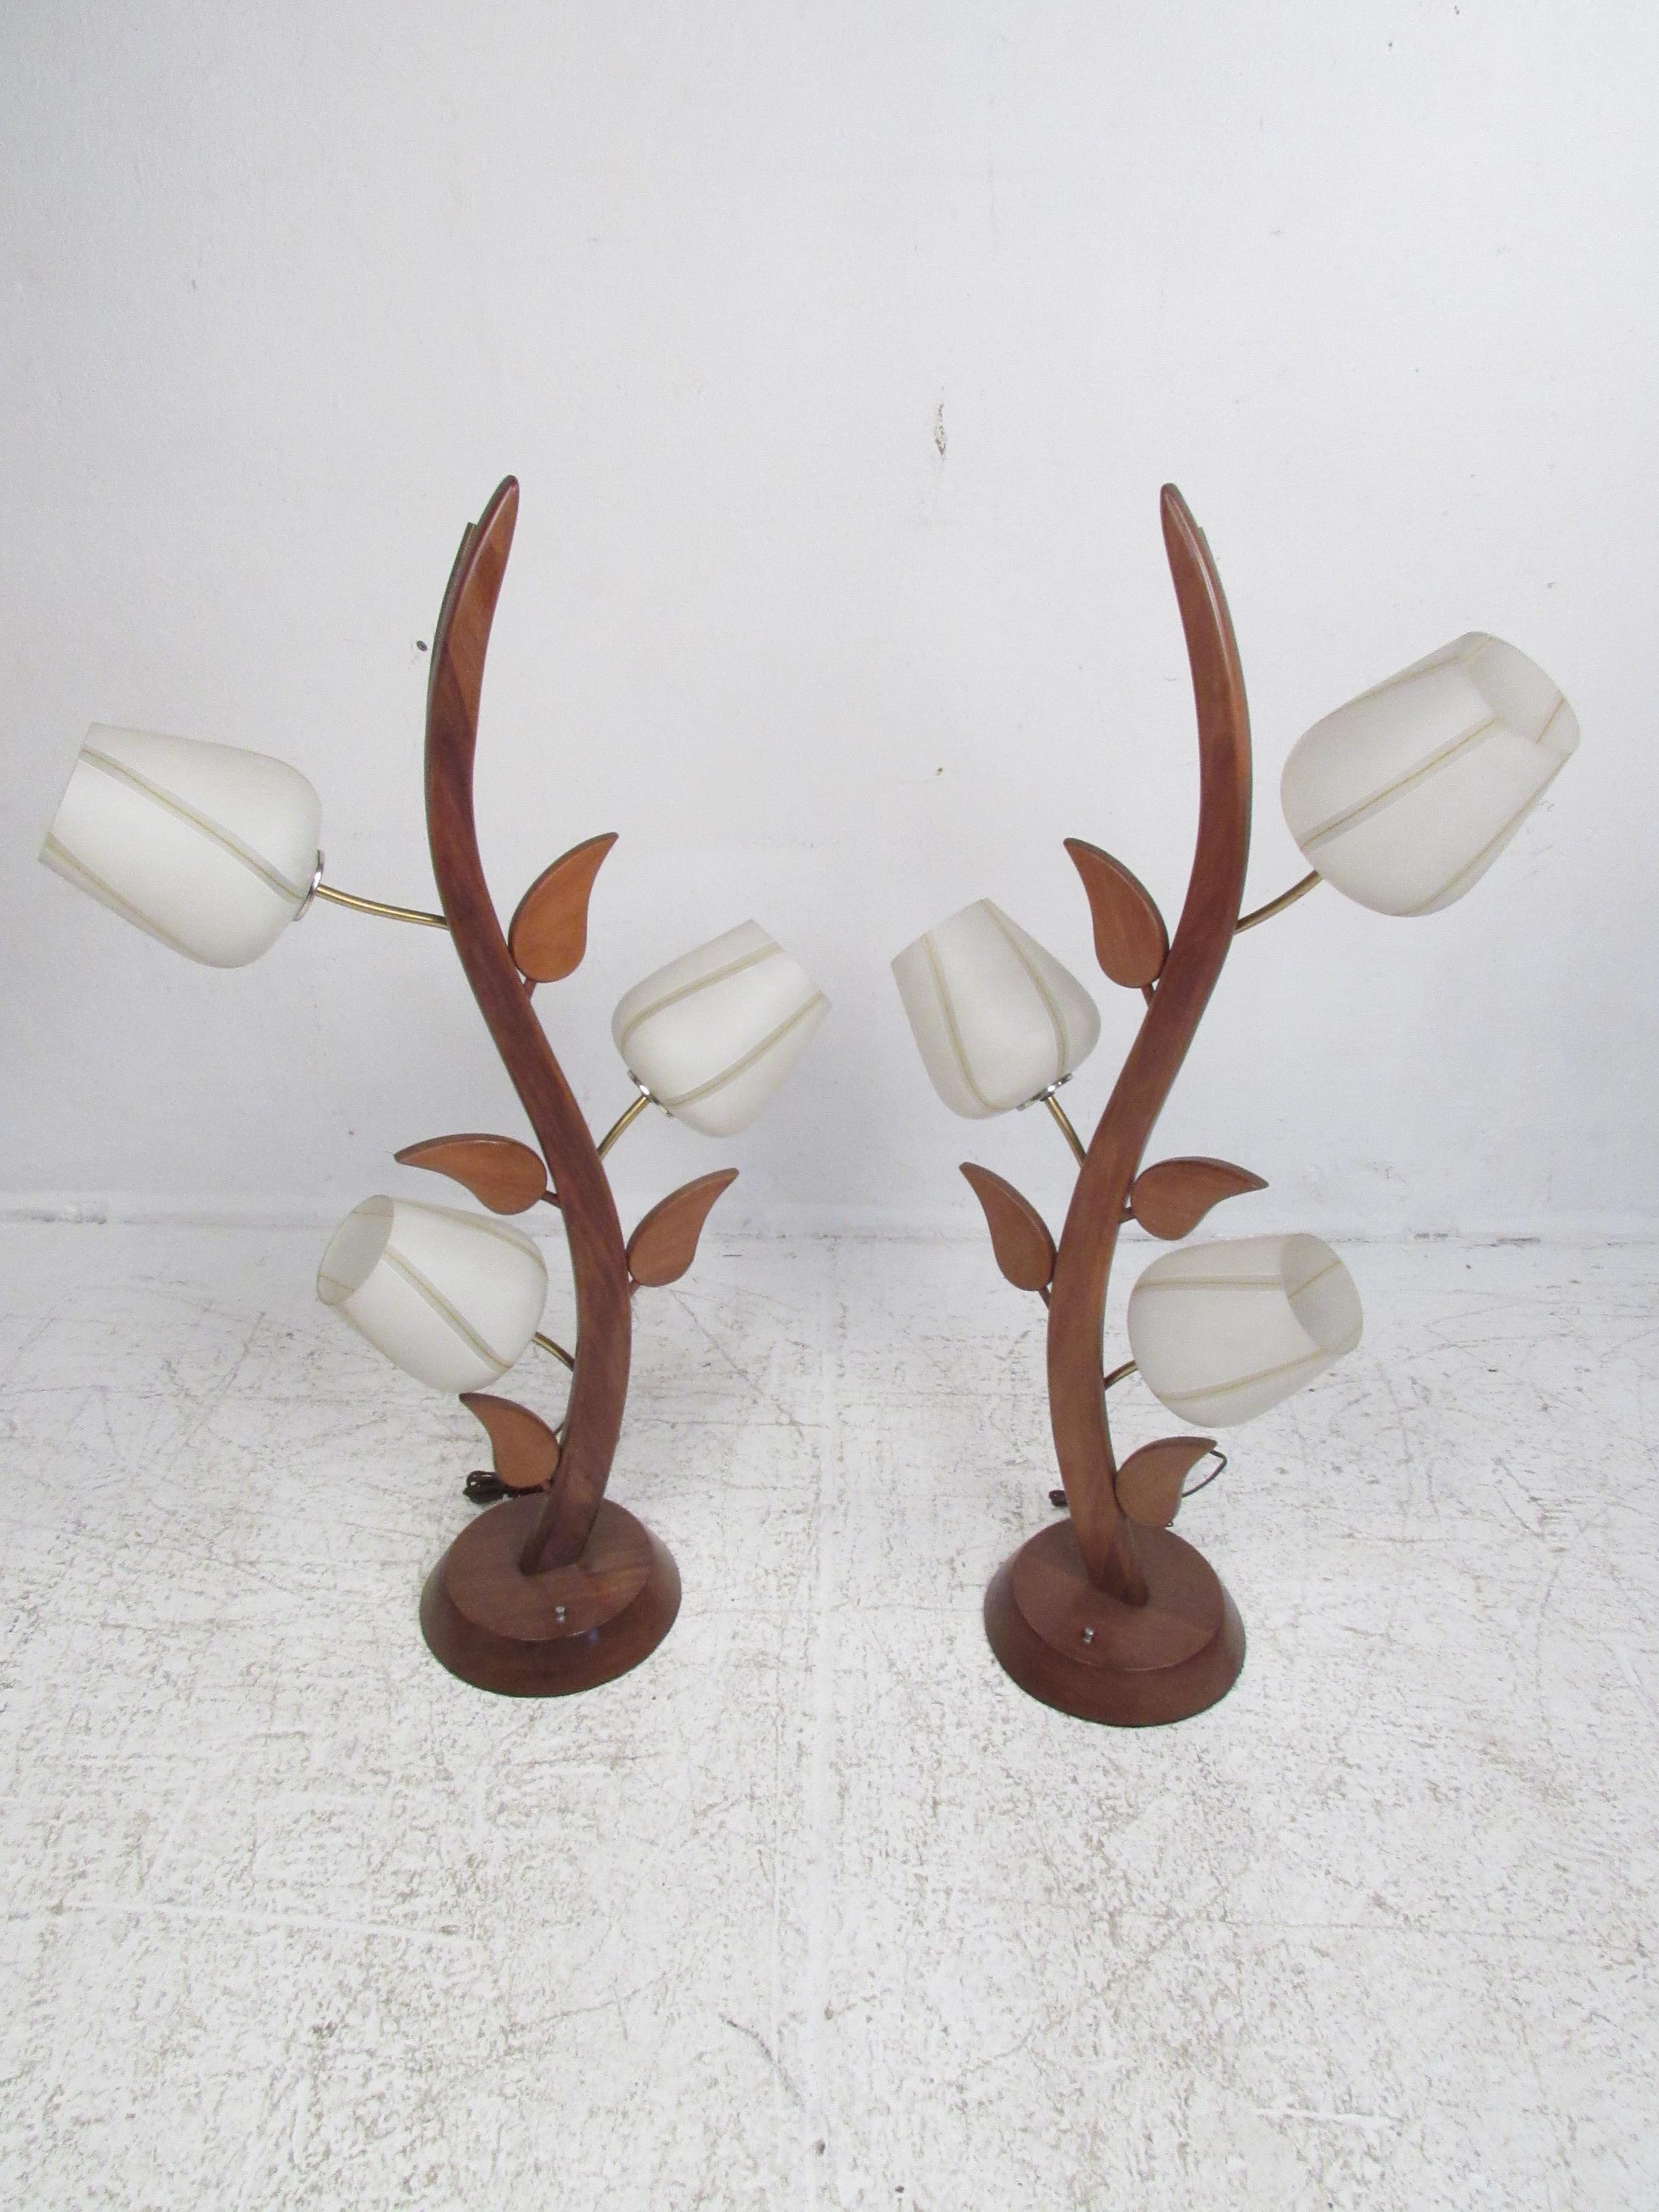 Paire très inhabituelle de lampes vintage sculptées pour ressembler à une fleur ou à une plante. Le dos est en métal. Mécanisme de mise en marche et d'arrêt par rotation. Re-câblage suggéré pour tout éclairage ou électricité vintage. Veuillez